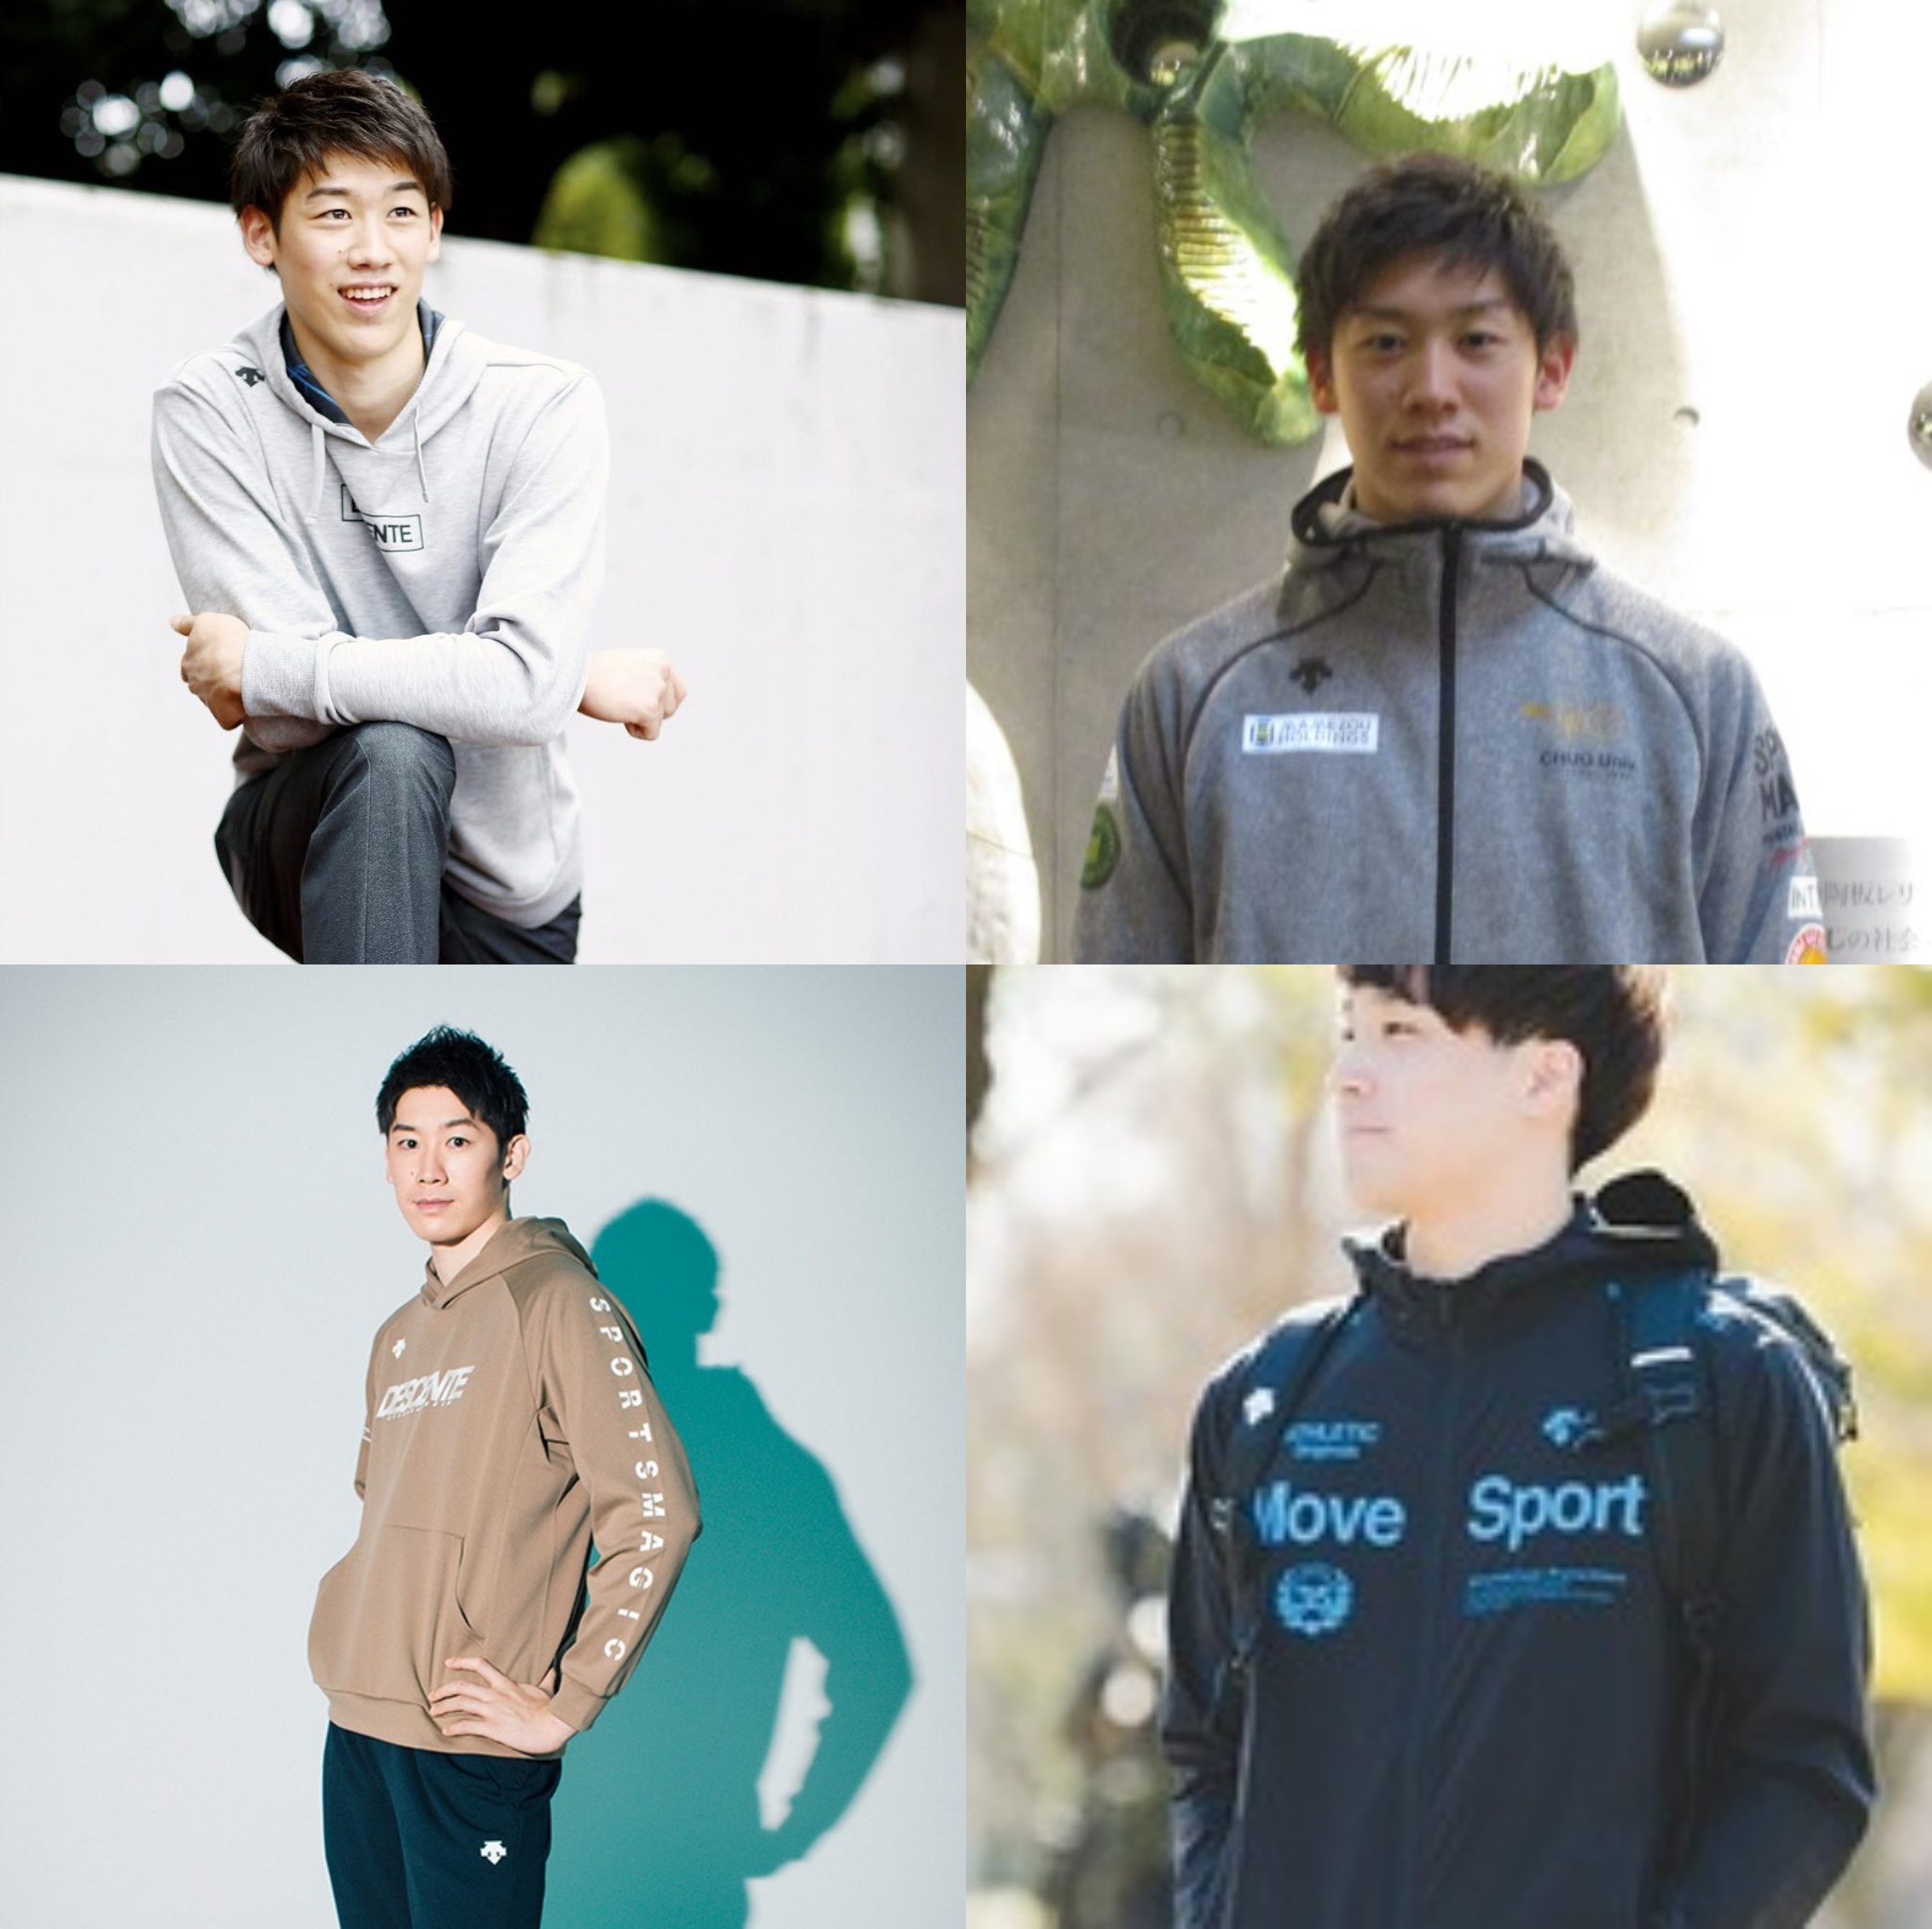 石川祐希のインスタの私服コーデが話題に 48枚の画像でブランド 愛用品を解説 スポーツを楽しむマーケターのブログ